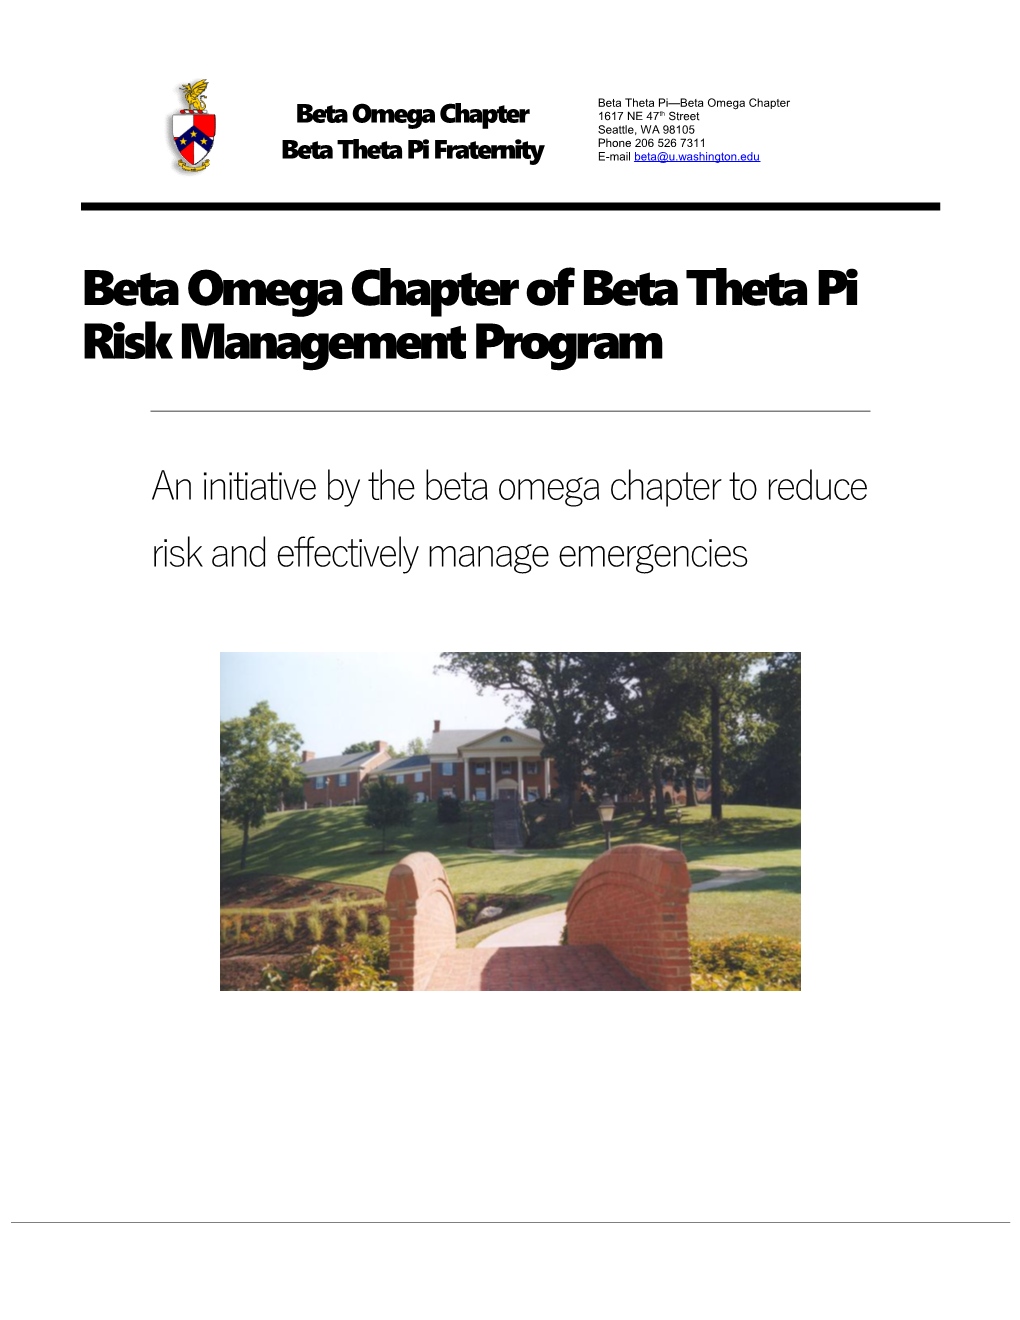 Beta Omega Chapter of Beta Theta Pi Risk Management Program